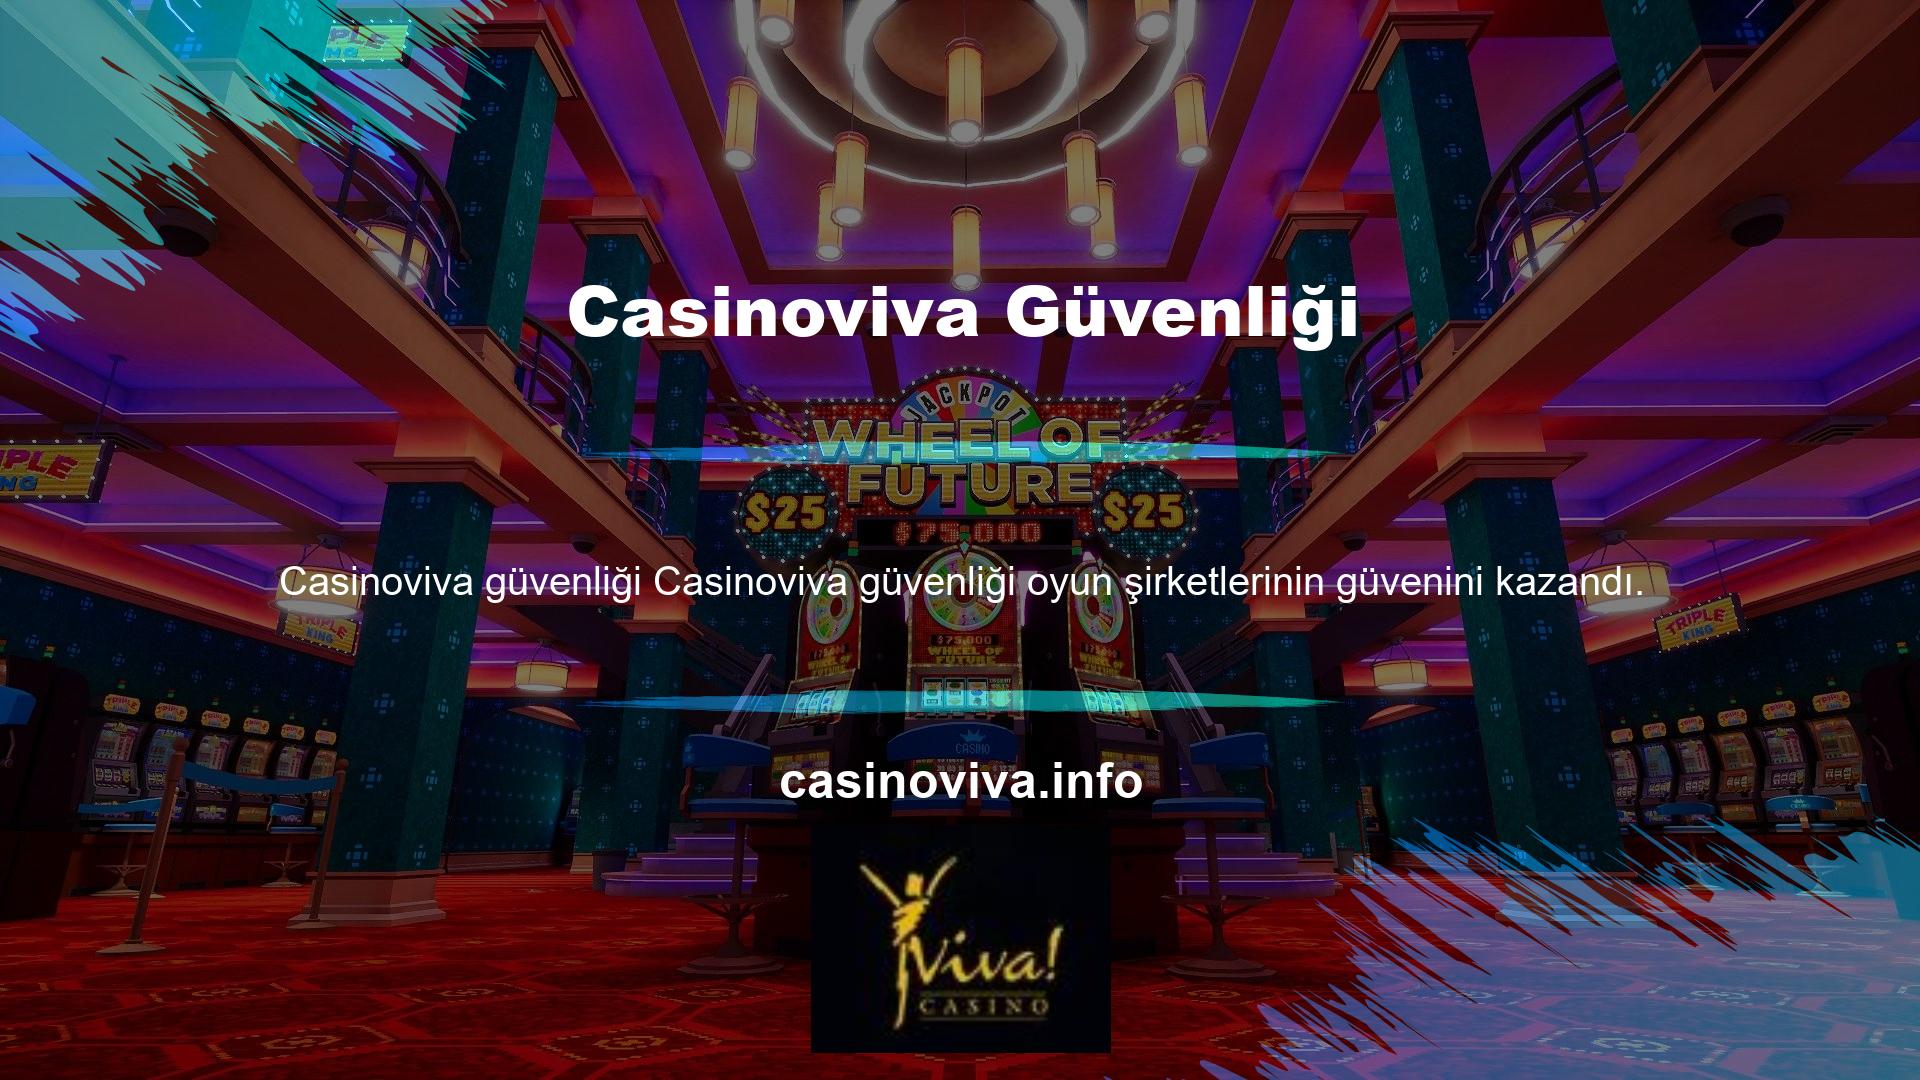 Bahis şirketi tarafından lisanslanan önemli bahis siteleri Casinoviva güvenliği oyun şirketlerinin güvenini kazanmıştır